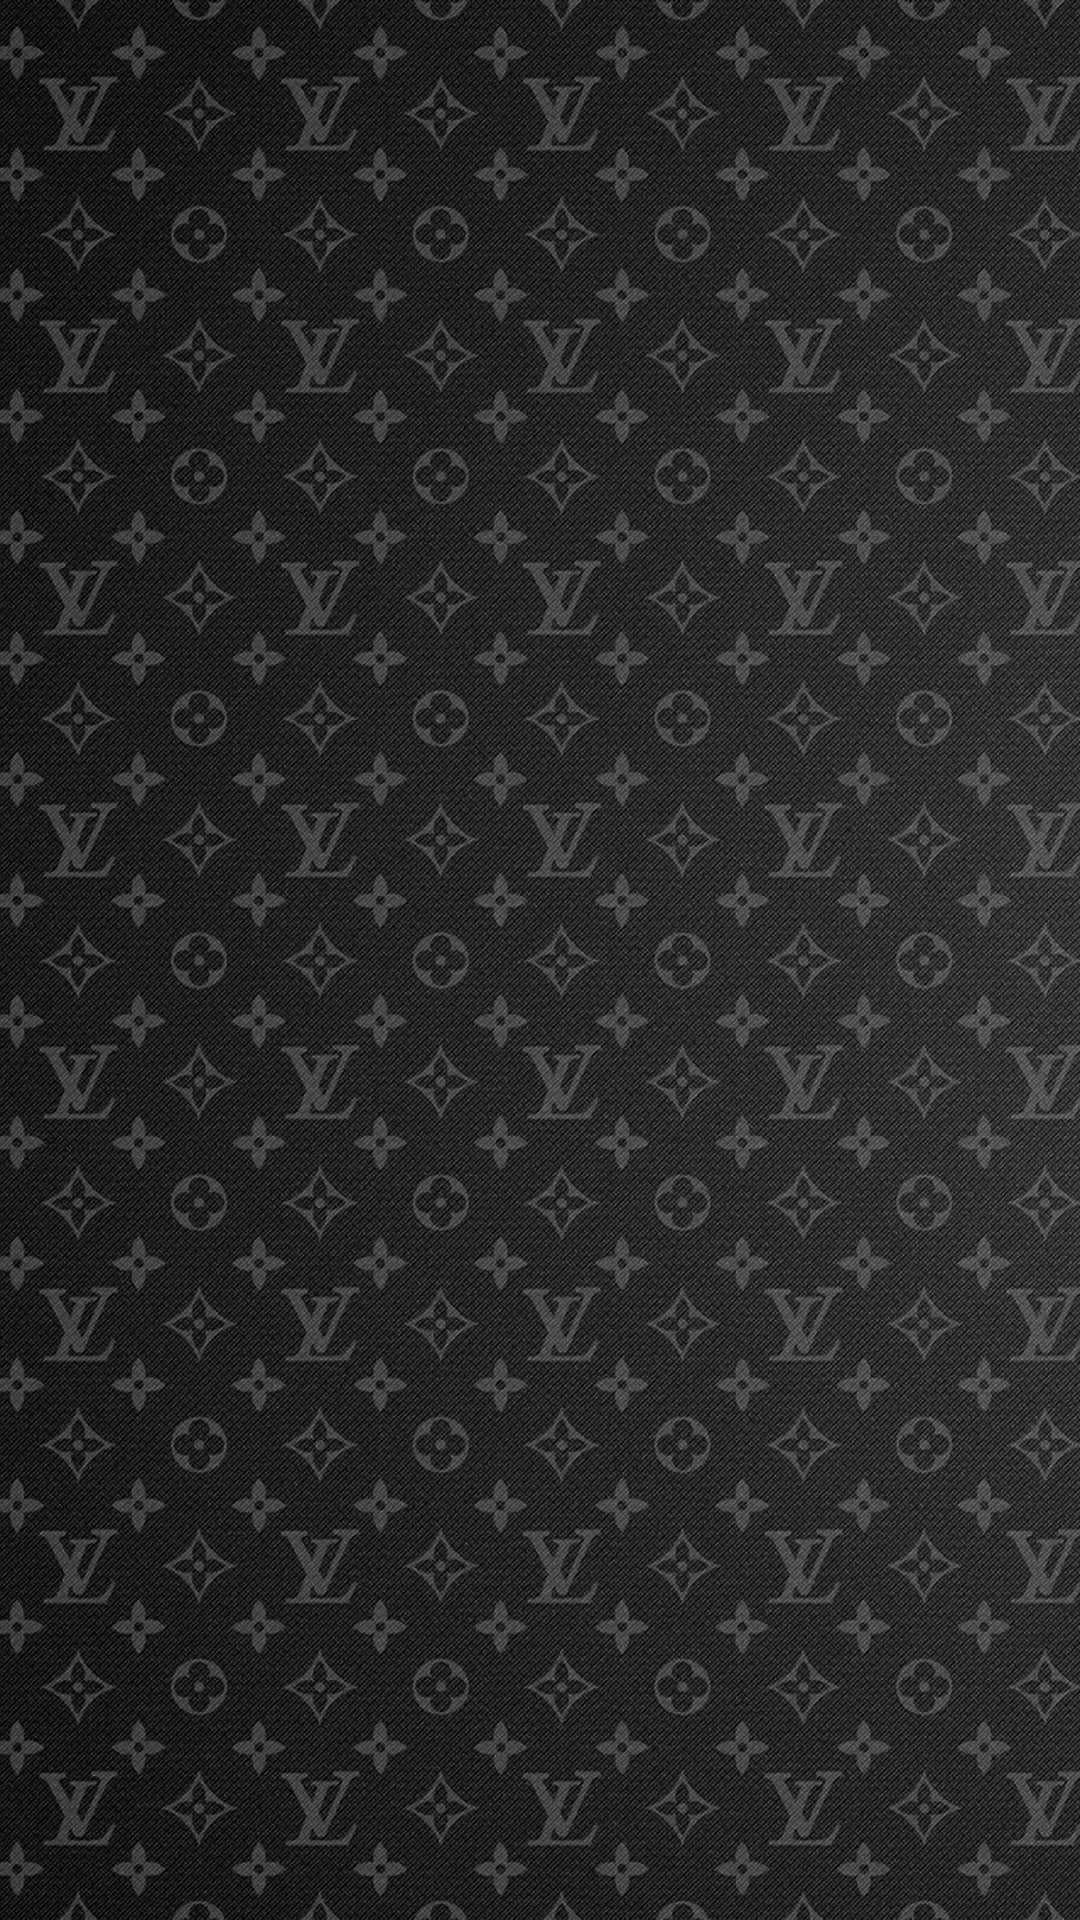 Einexklusiver Louis Vuitton Schreibtischhintergrund Wallpaper